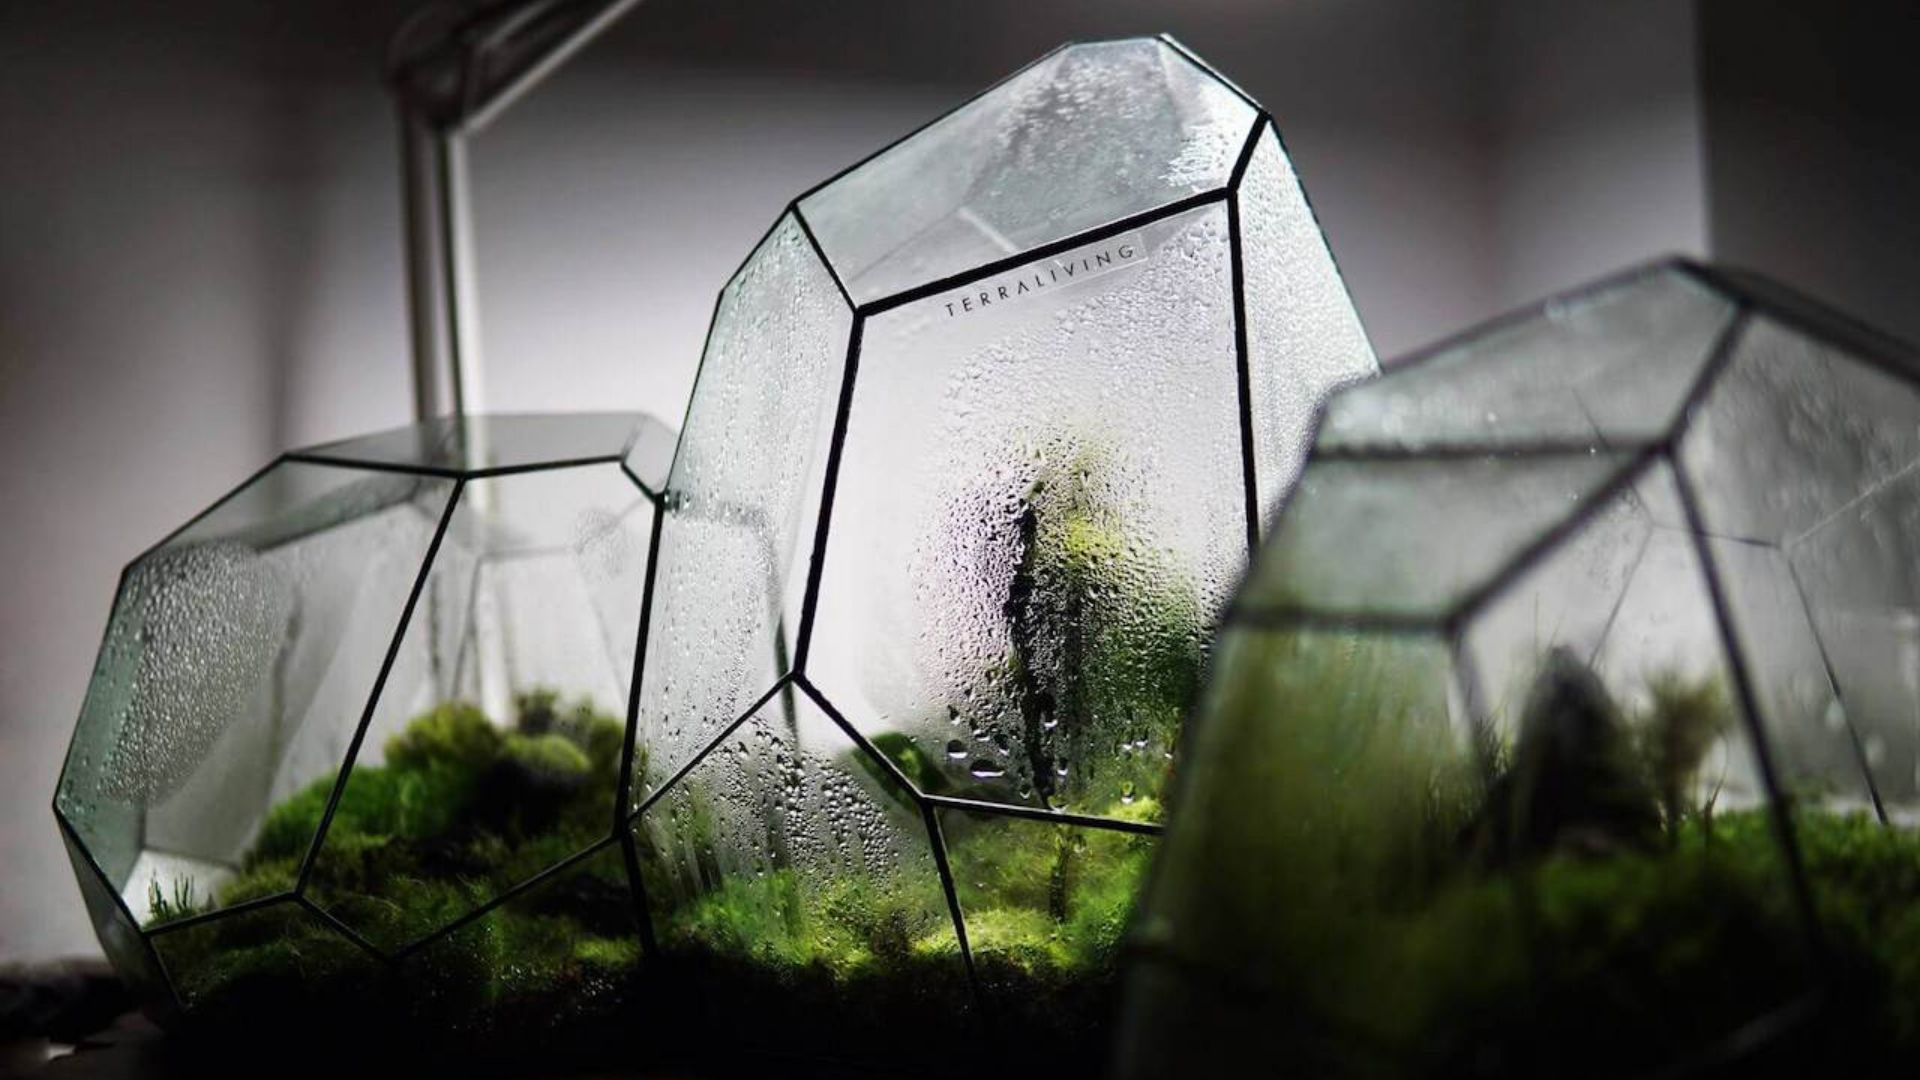 TerraLiving terrarium brings nature to our spaces : DesignWanted